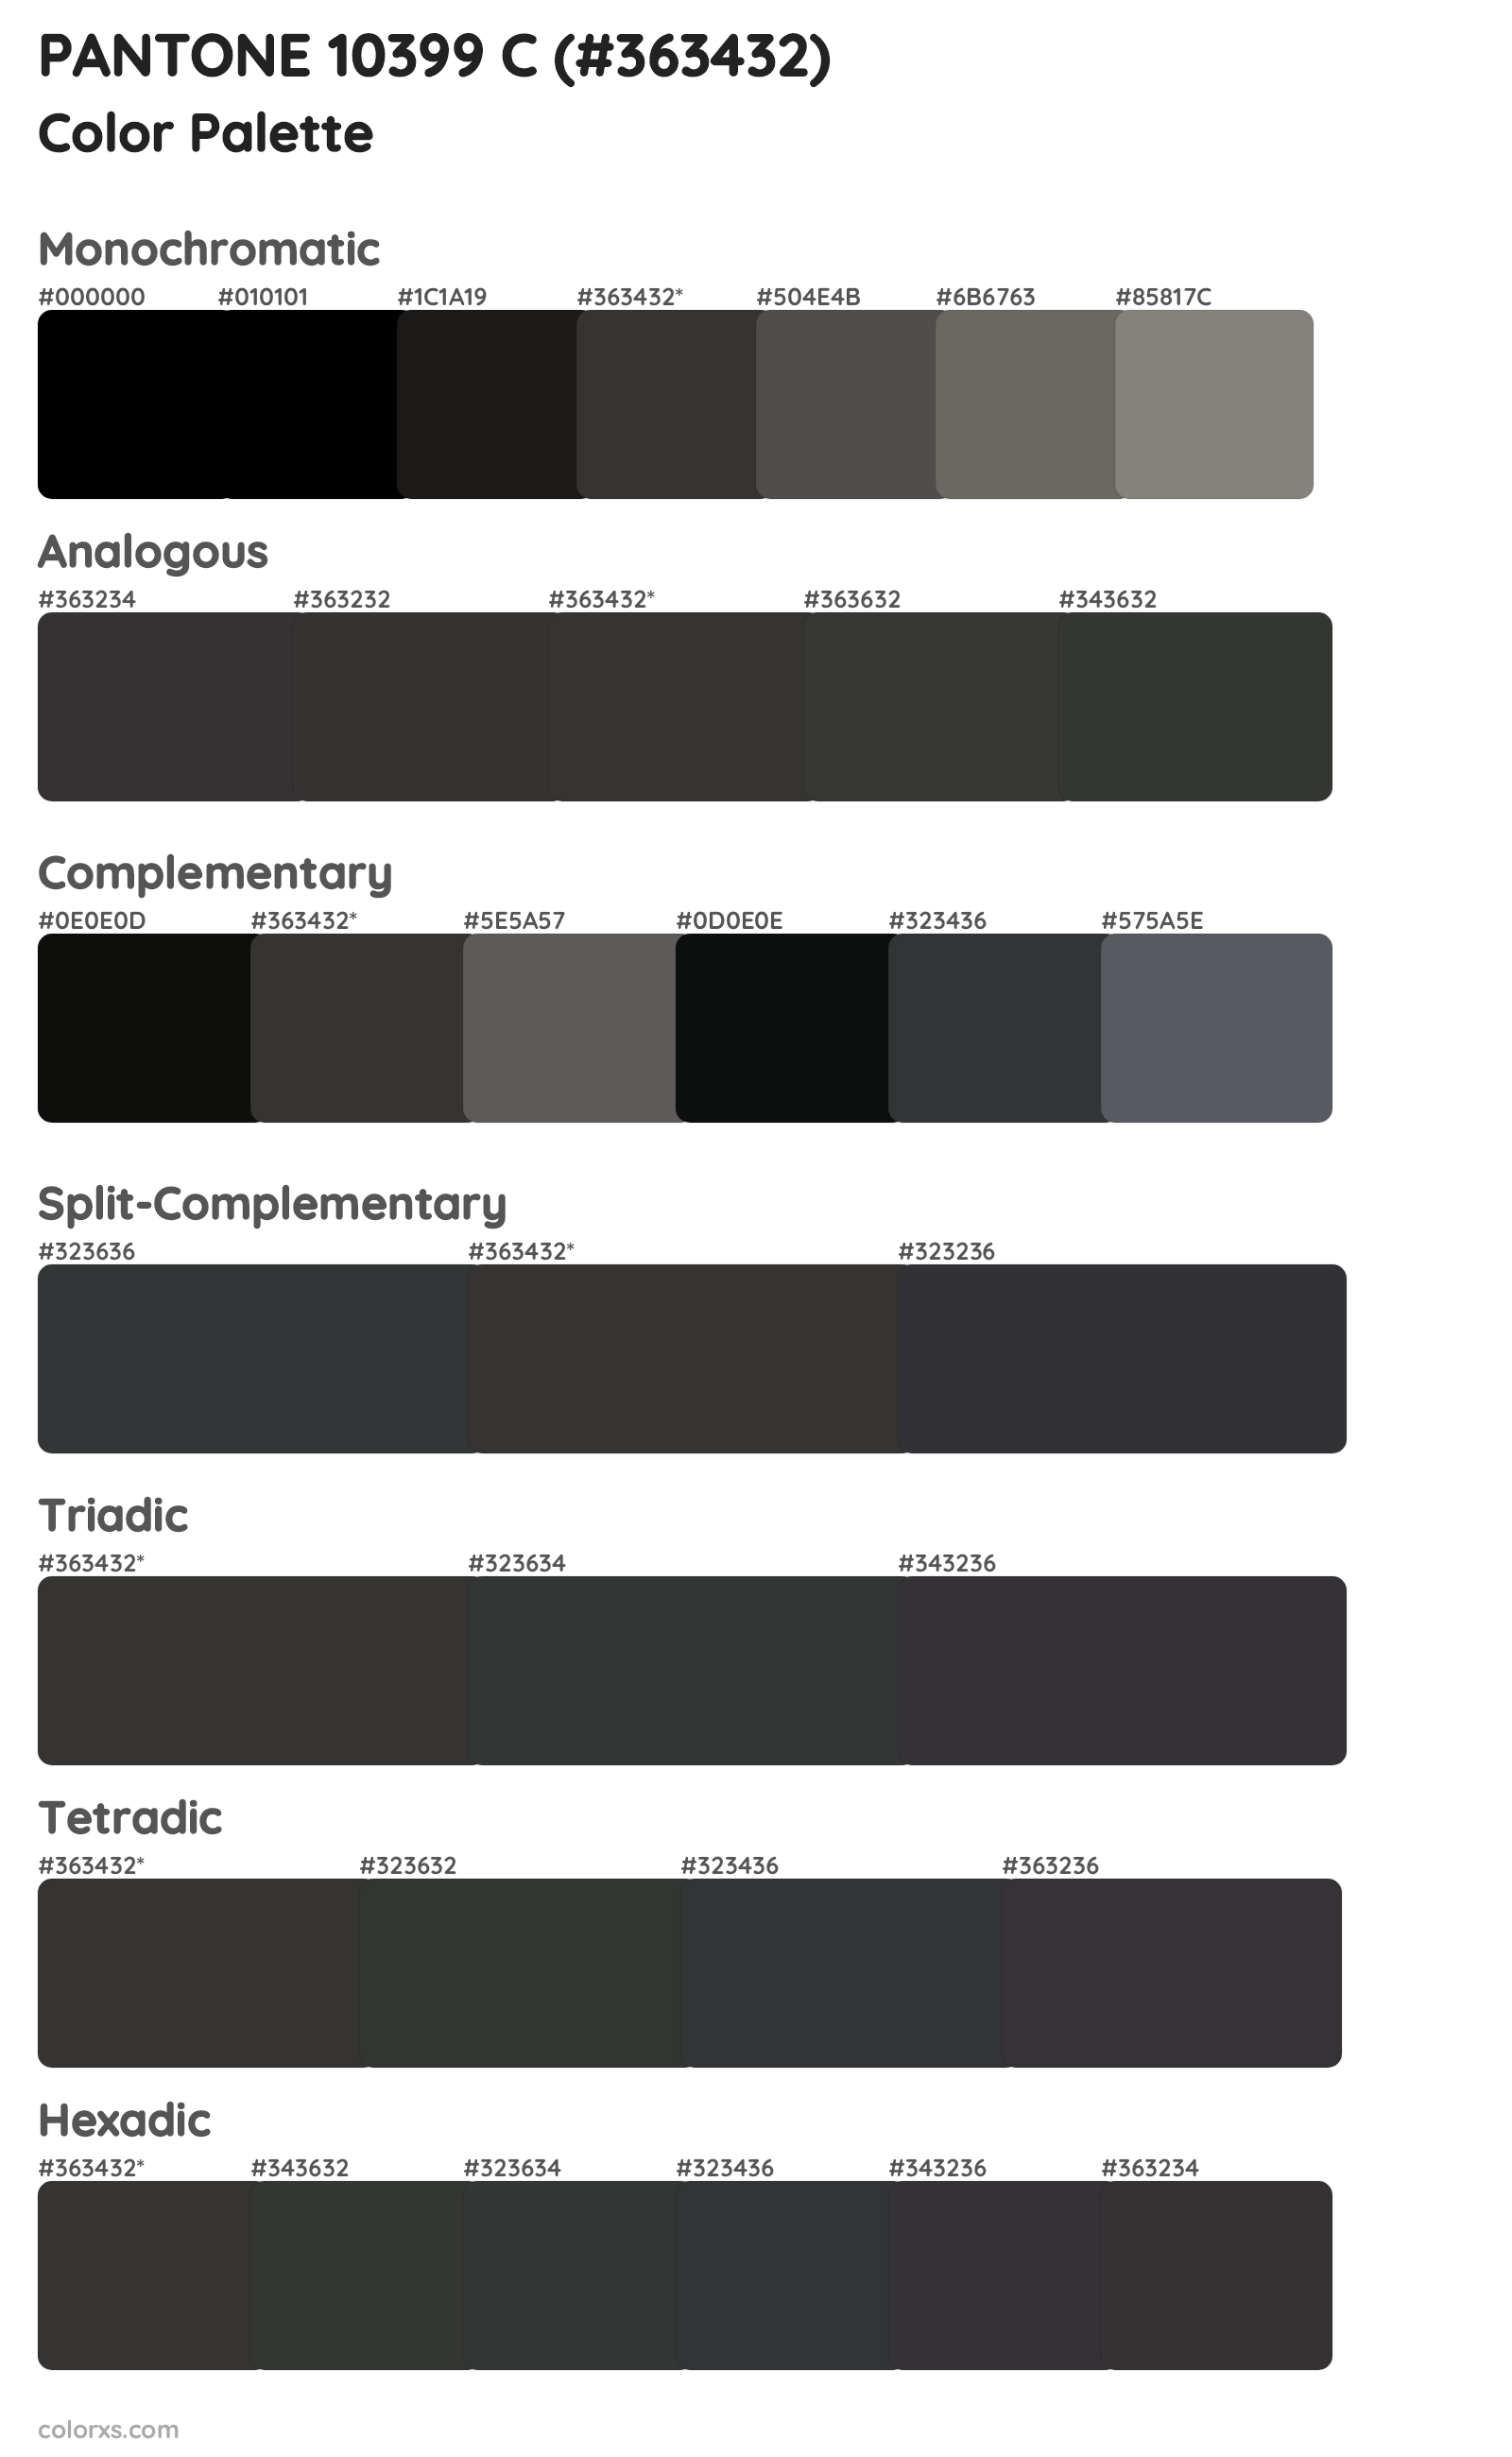 PANTONE 10399 C Color Scheme Palettes